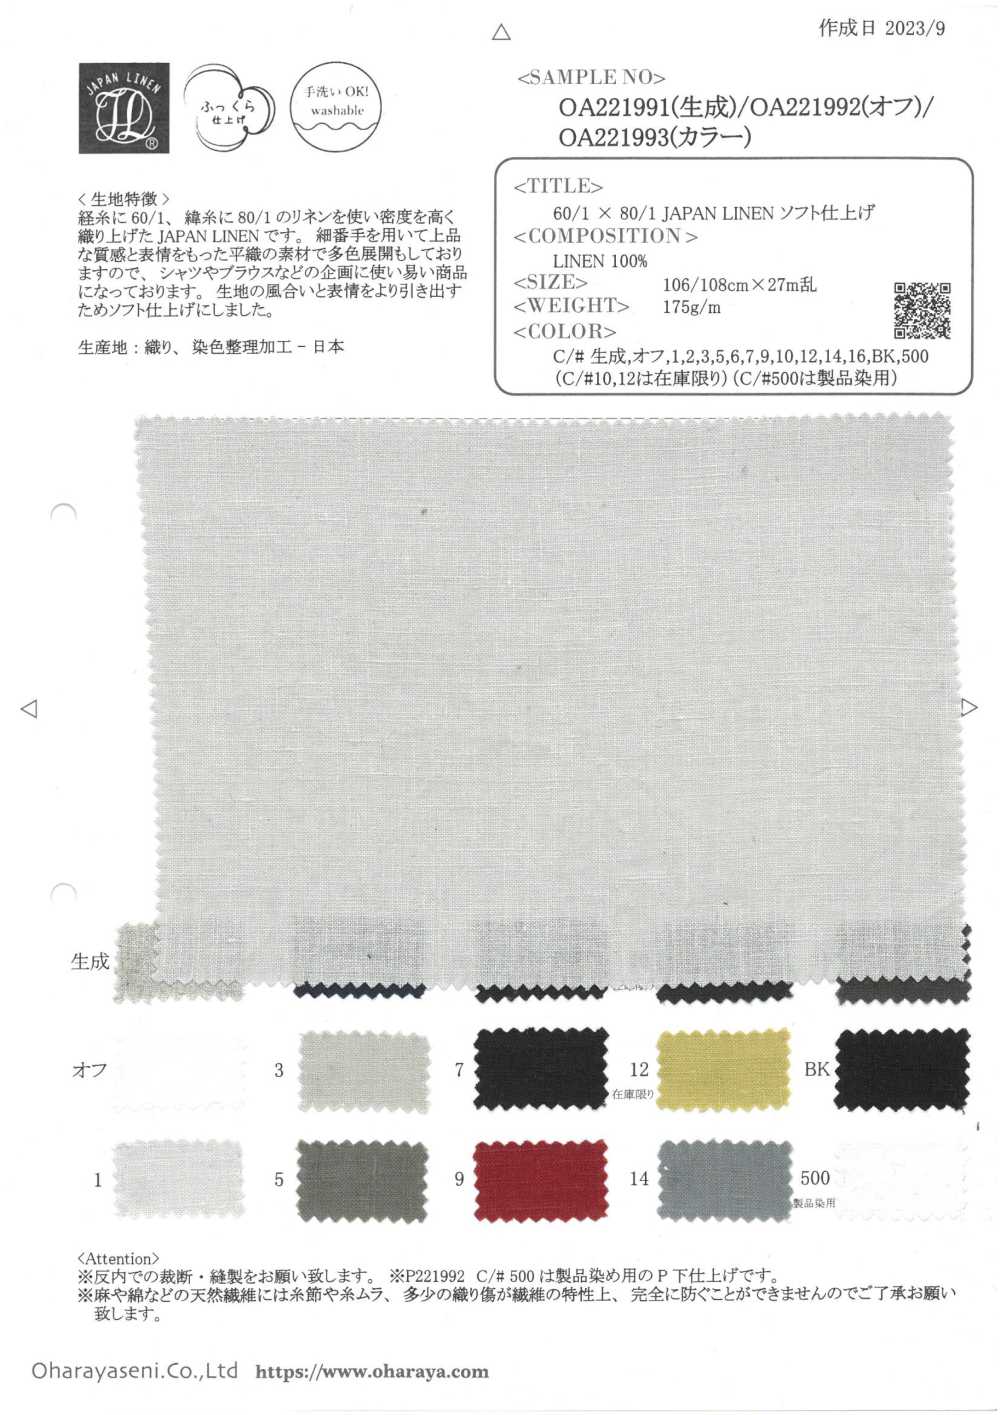 OA221993 60/1 × 80/1 JAPAN LINEN ソフト仕上げ (カラー)[生地] 小原屋繊維